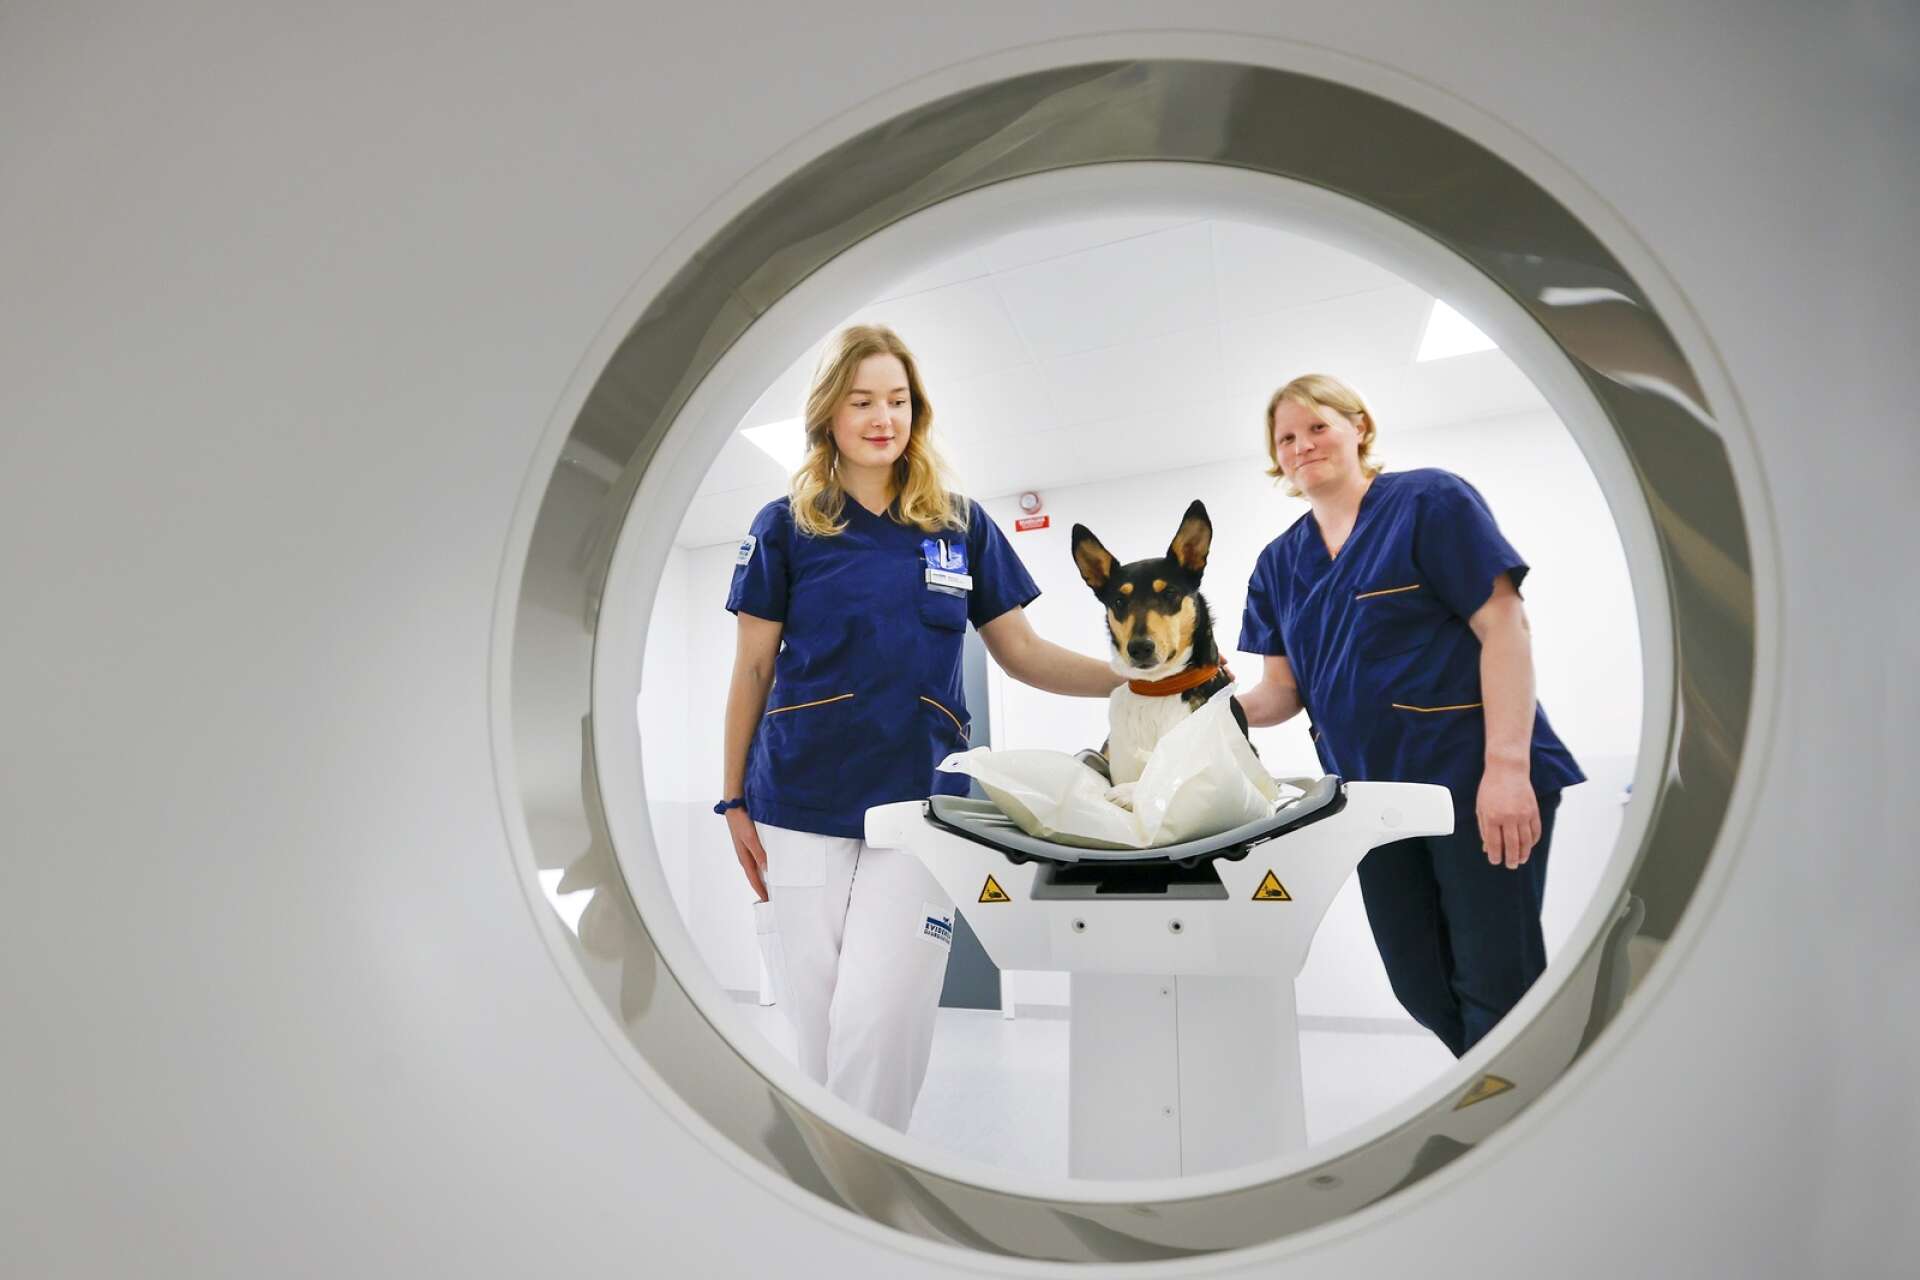 På det nyrenoverade djursjukhuset på Färjestad i Karlstad äger man numer en CT-röntgen. Här visar hunden Lovi upp maskinen tillsammans med matte Matilda Gustavsson (till vänster) och djursjukskötaren Malin Hedh.